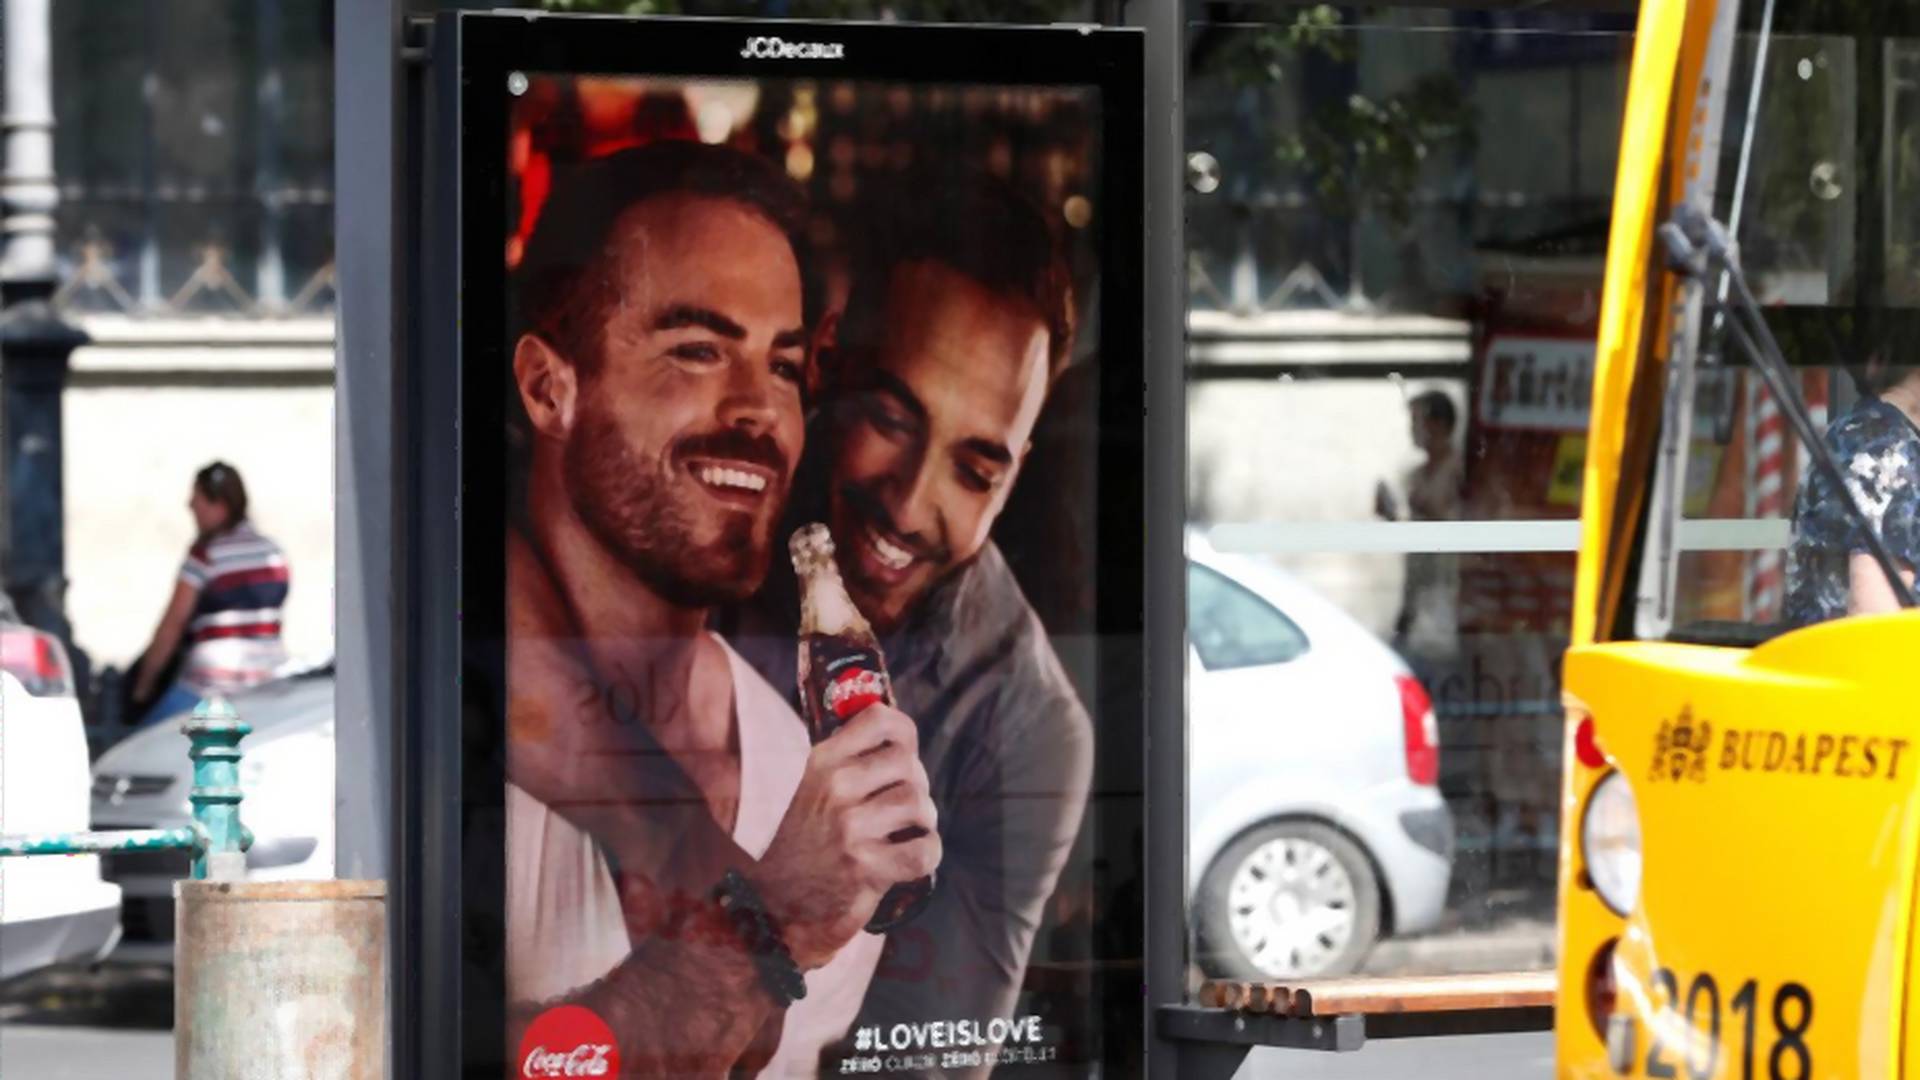 Rząd Węgier chciał usunąć reklamę Coca-Coli z homoseksualnymi parami na plakatach